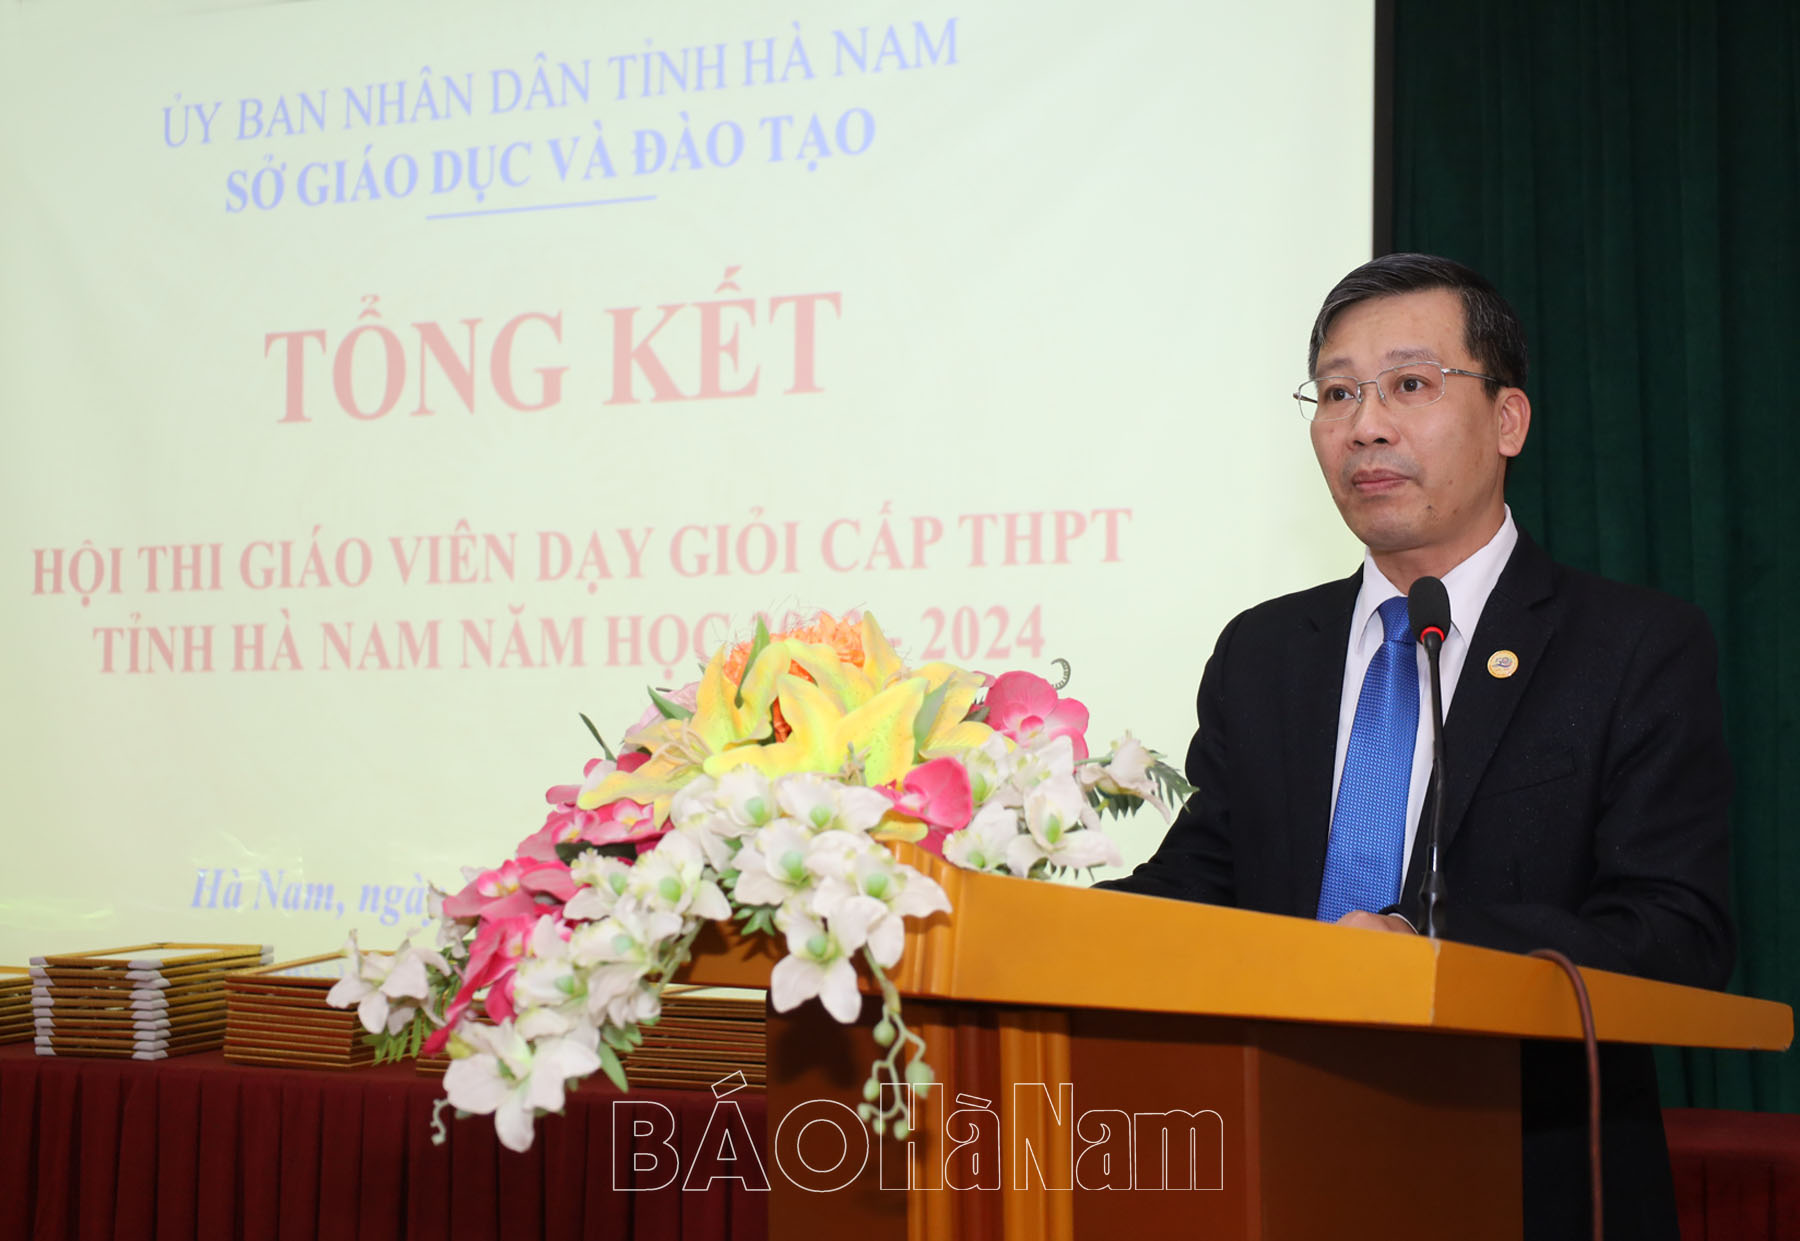 47 giáo viên được công nhận Giáo viên dạy giỏi cấp THPT tỉnh Hà Nam năm ...